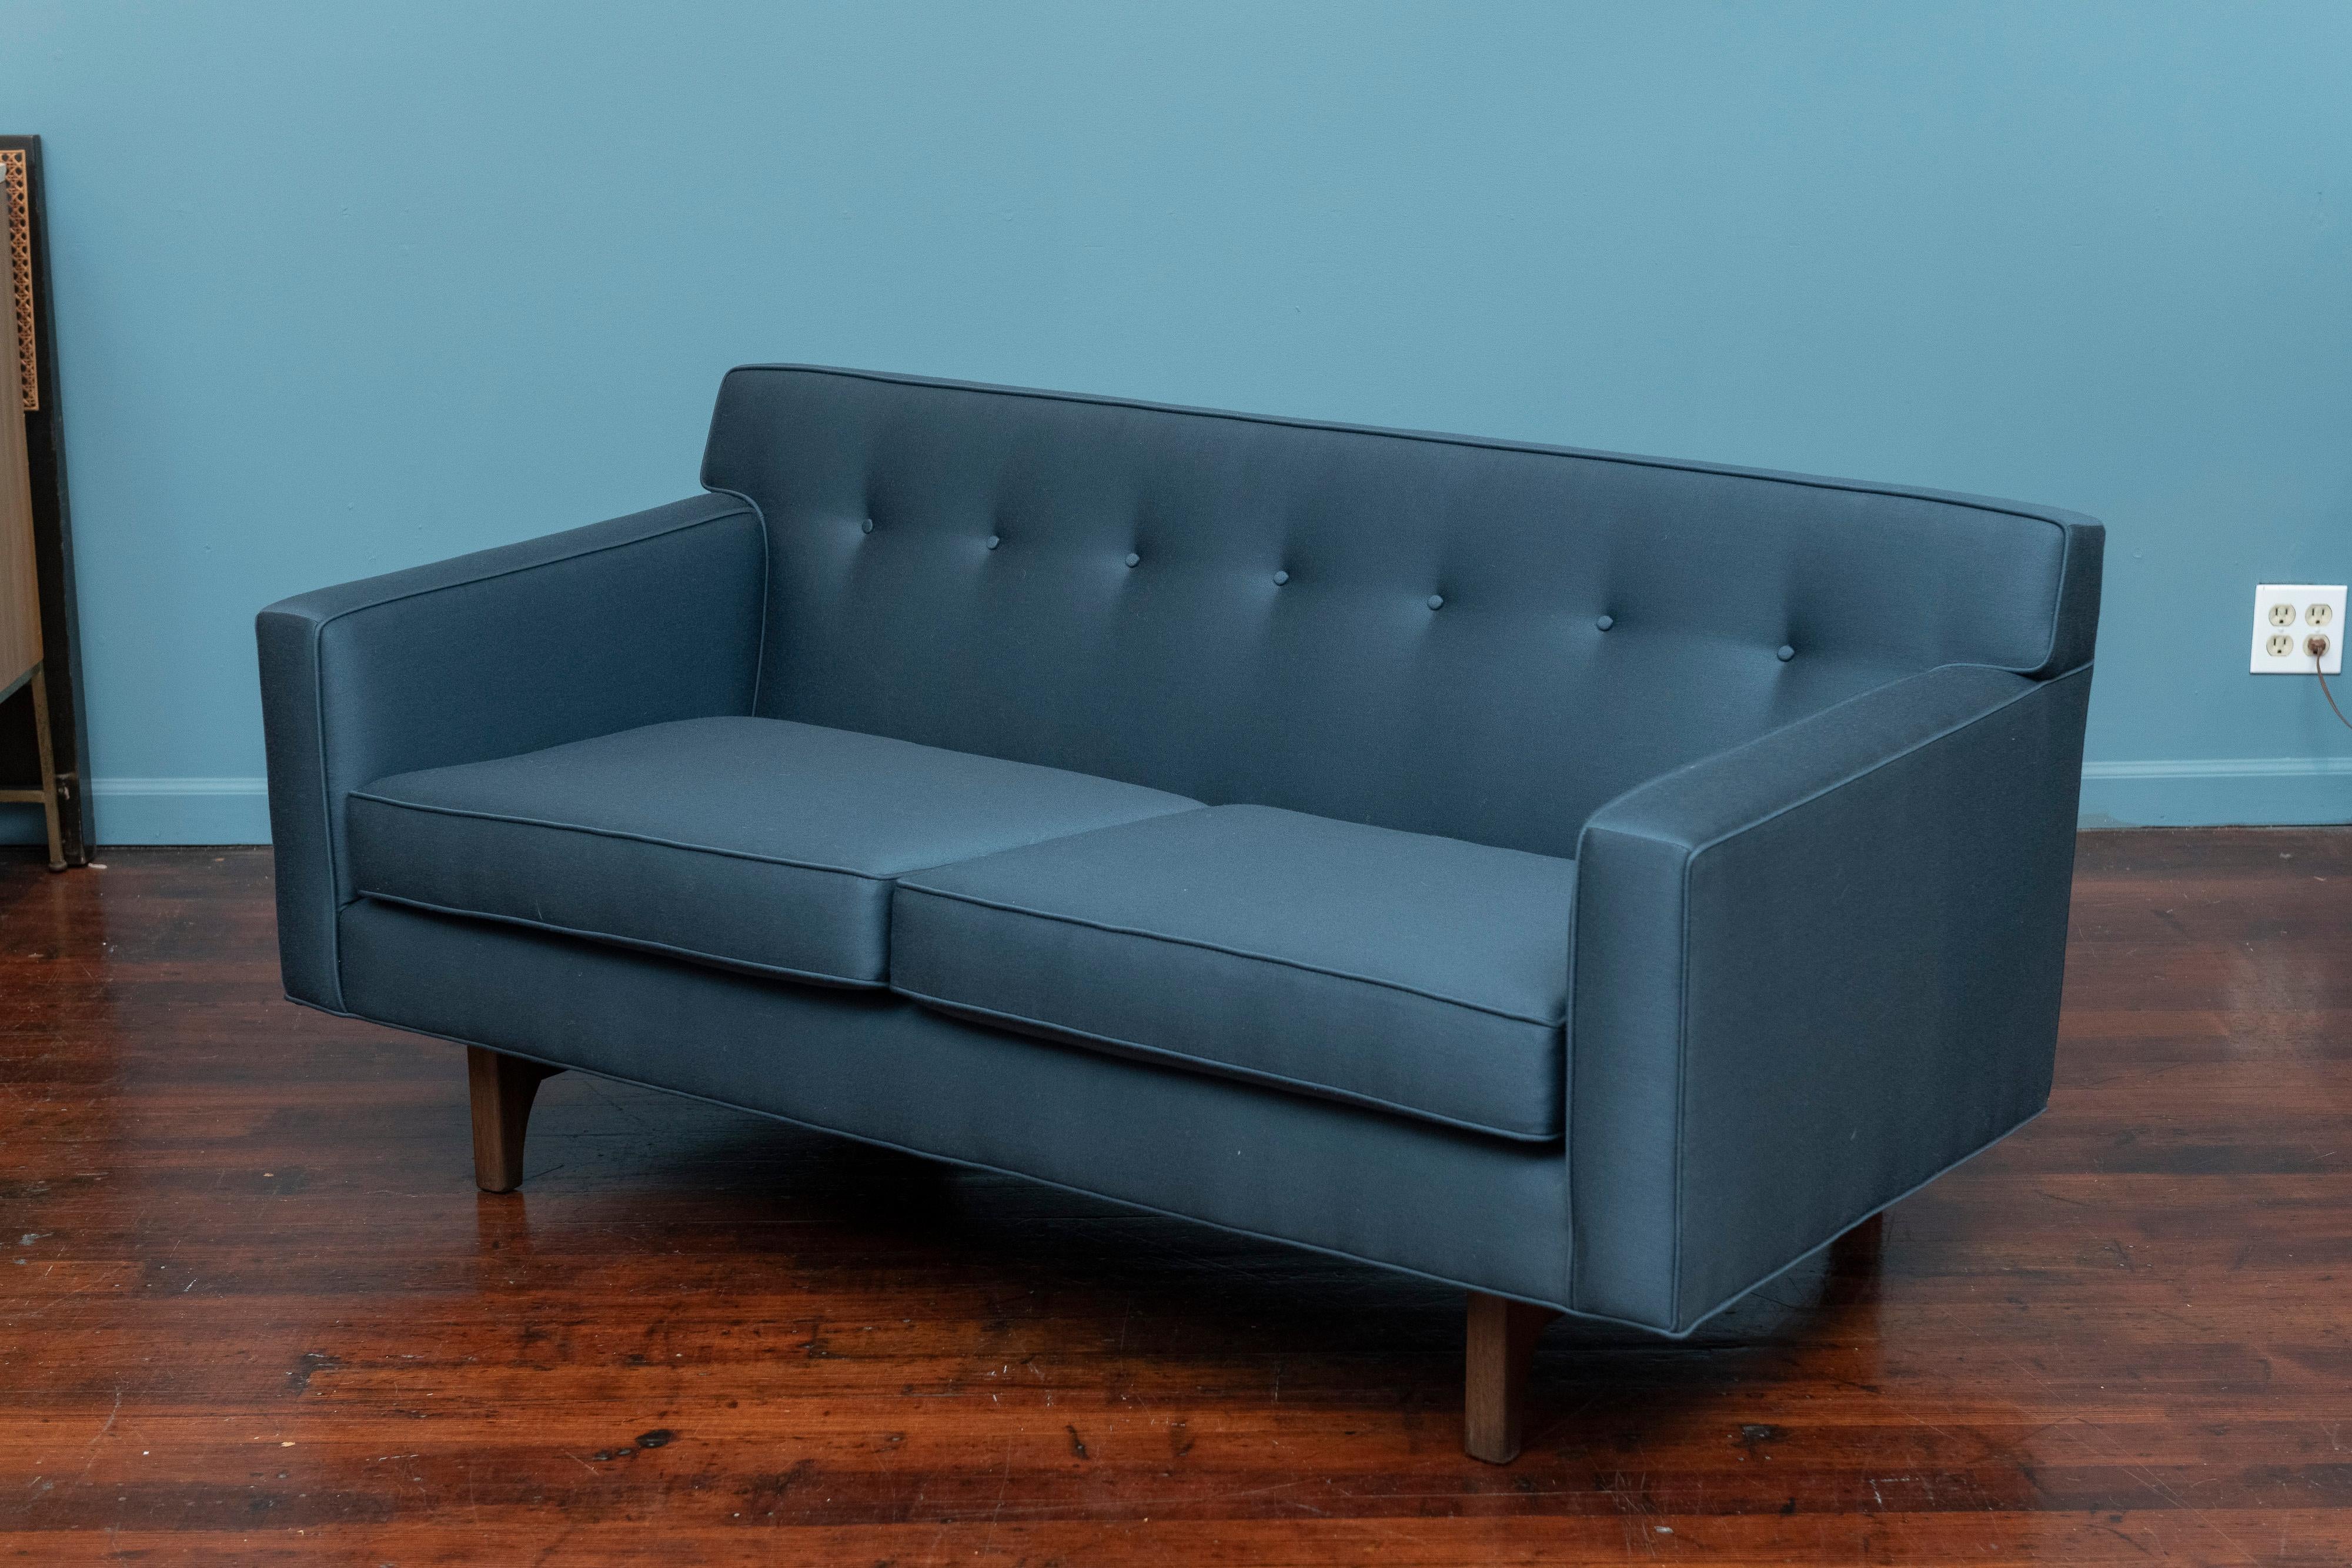 Dunbar Furniture Bügelsofa mit Rückenlehne, Modell 131, entworfen von Roger Sprunger. Seltene kleinere Version Sofa oder Loveseat, die perfekt für zwei Personen ist. Massive 